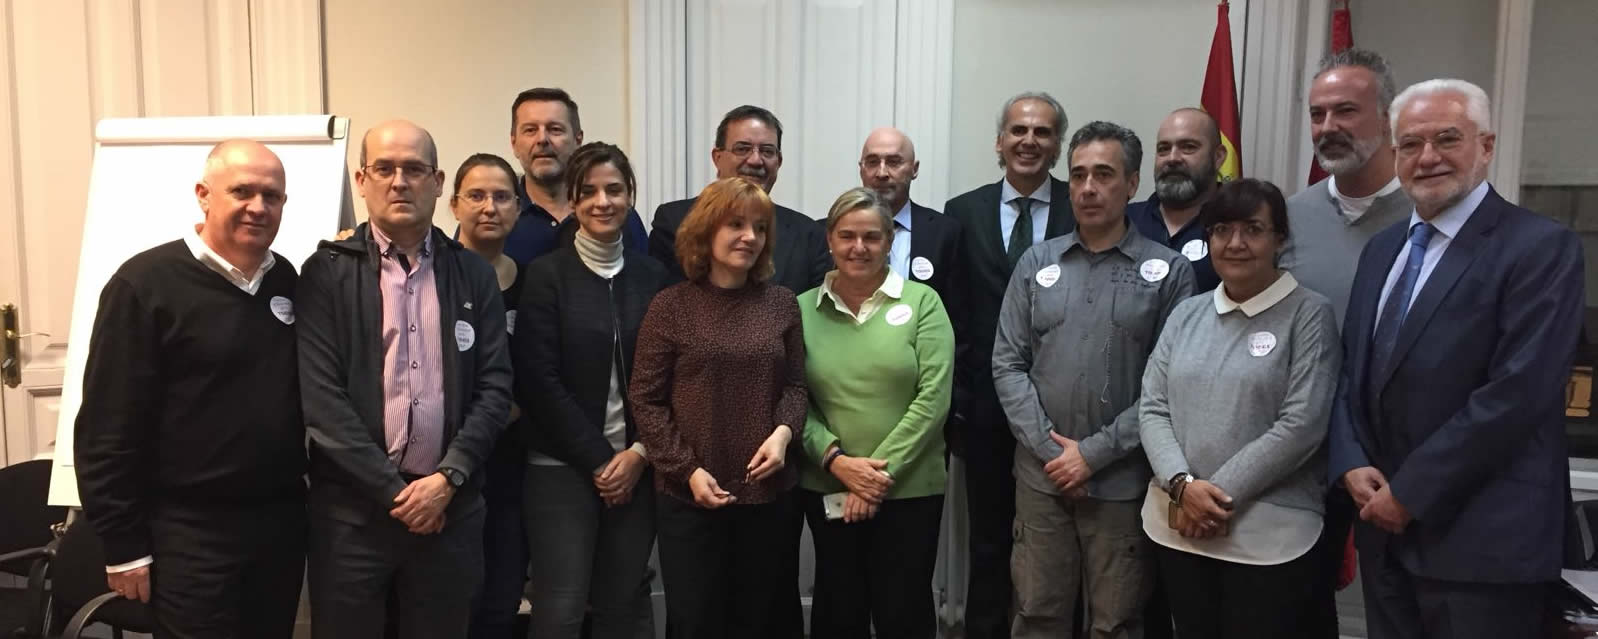 Enrique Ruiz Escudero, junto a los miembros de la Mesa Sectorial Sanidad Carrera Profesional